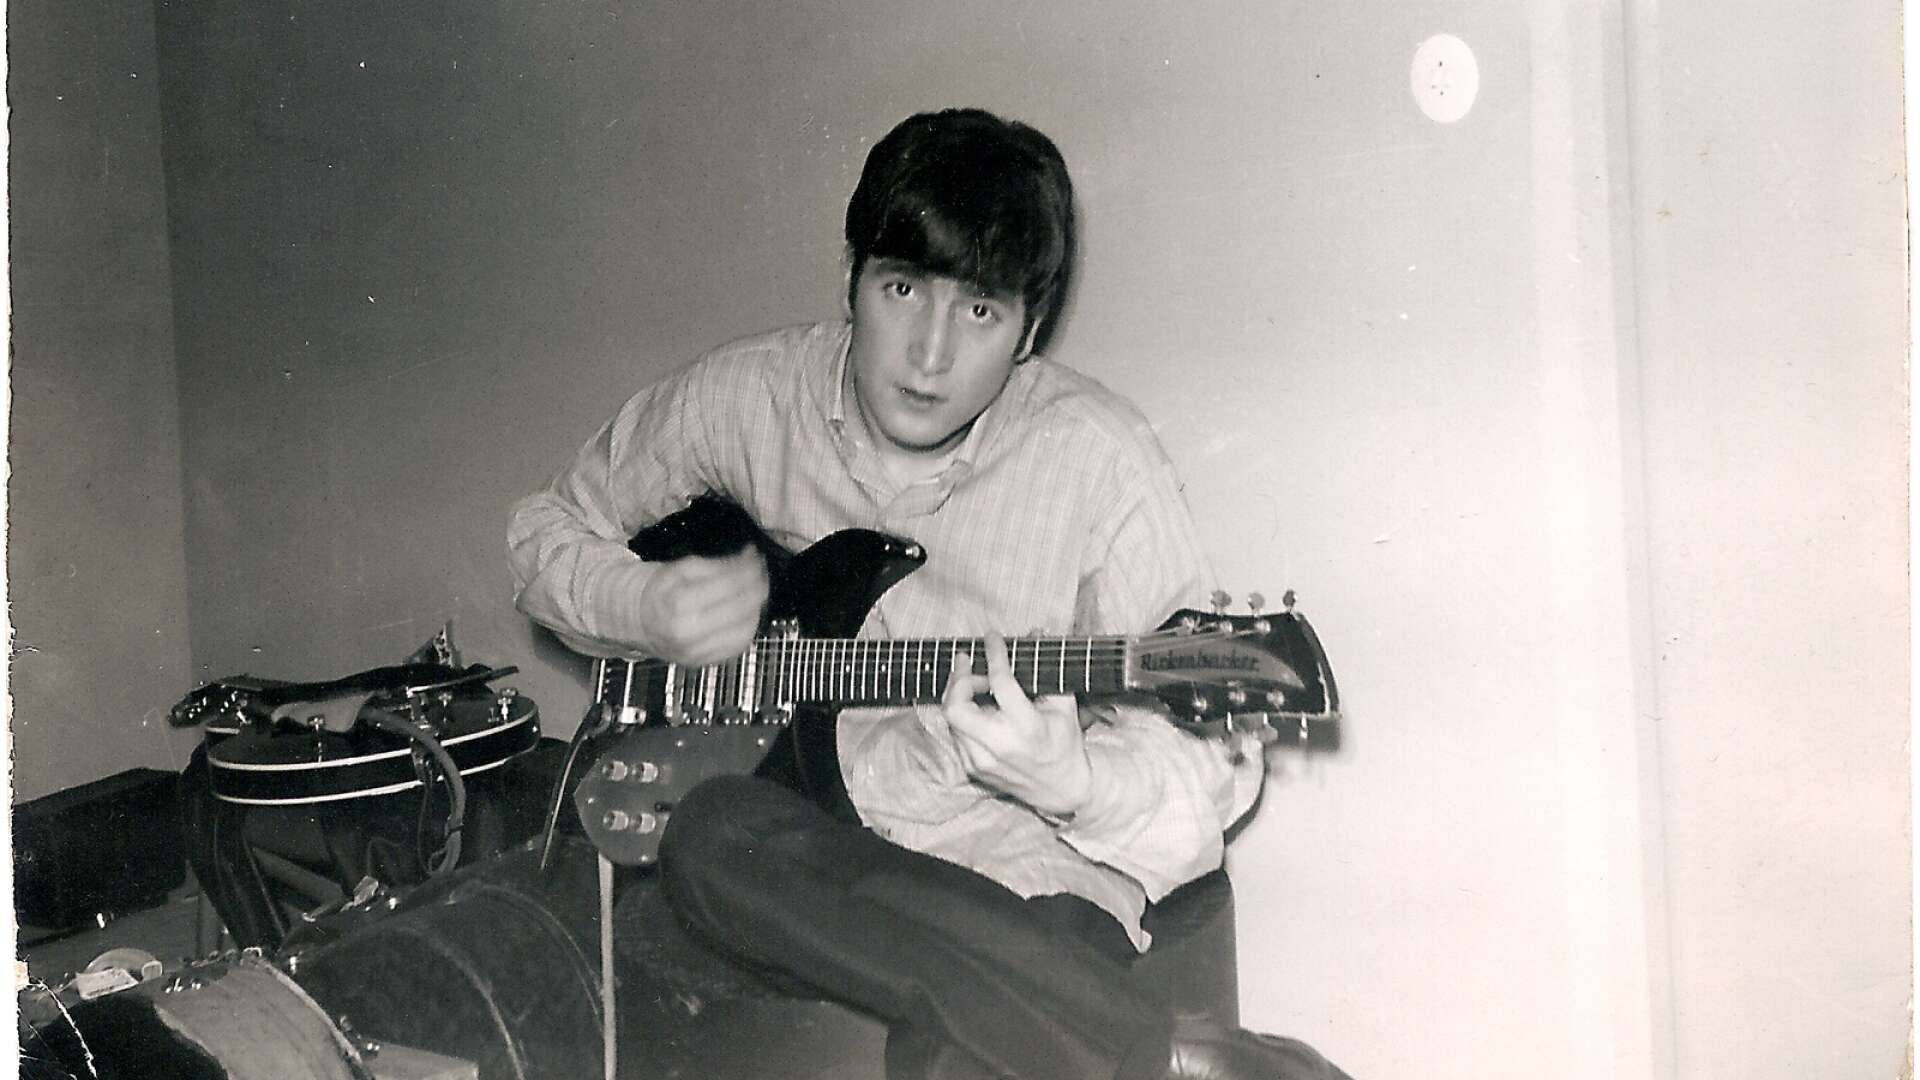 John Lennon i logen under scenen i Sundstagymnasiets aula. På fredagskvällen den 25 oktober 1963, alltså för 60 år sedan, gjorde The Beatles två konserter i Karlstad. 